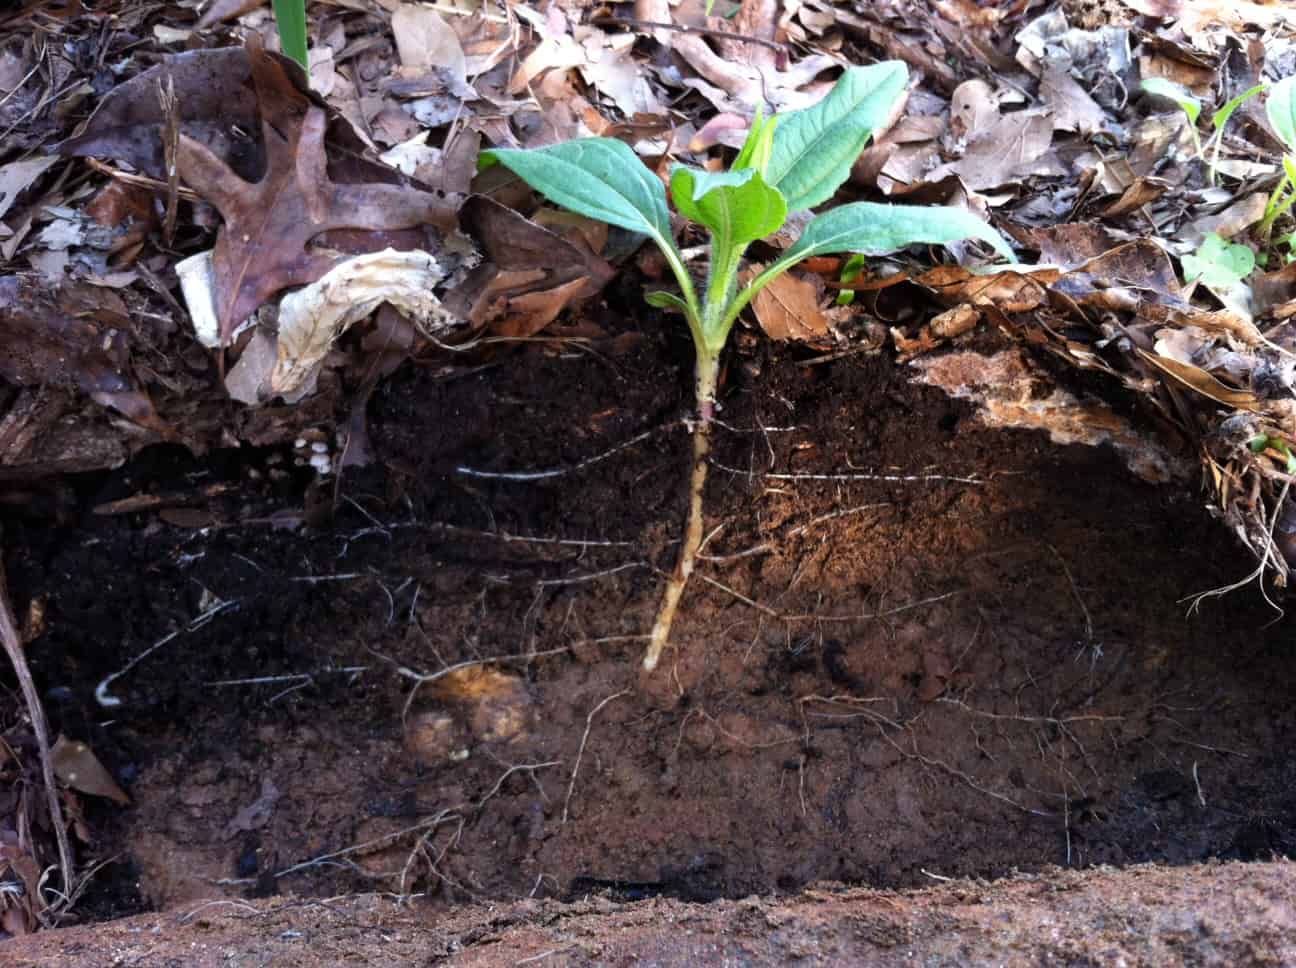 图片:土质在土豪农场自己建造。一个美丽的横断面显示一个年轻的耶路撒冷洋蓟植物的根际。